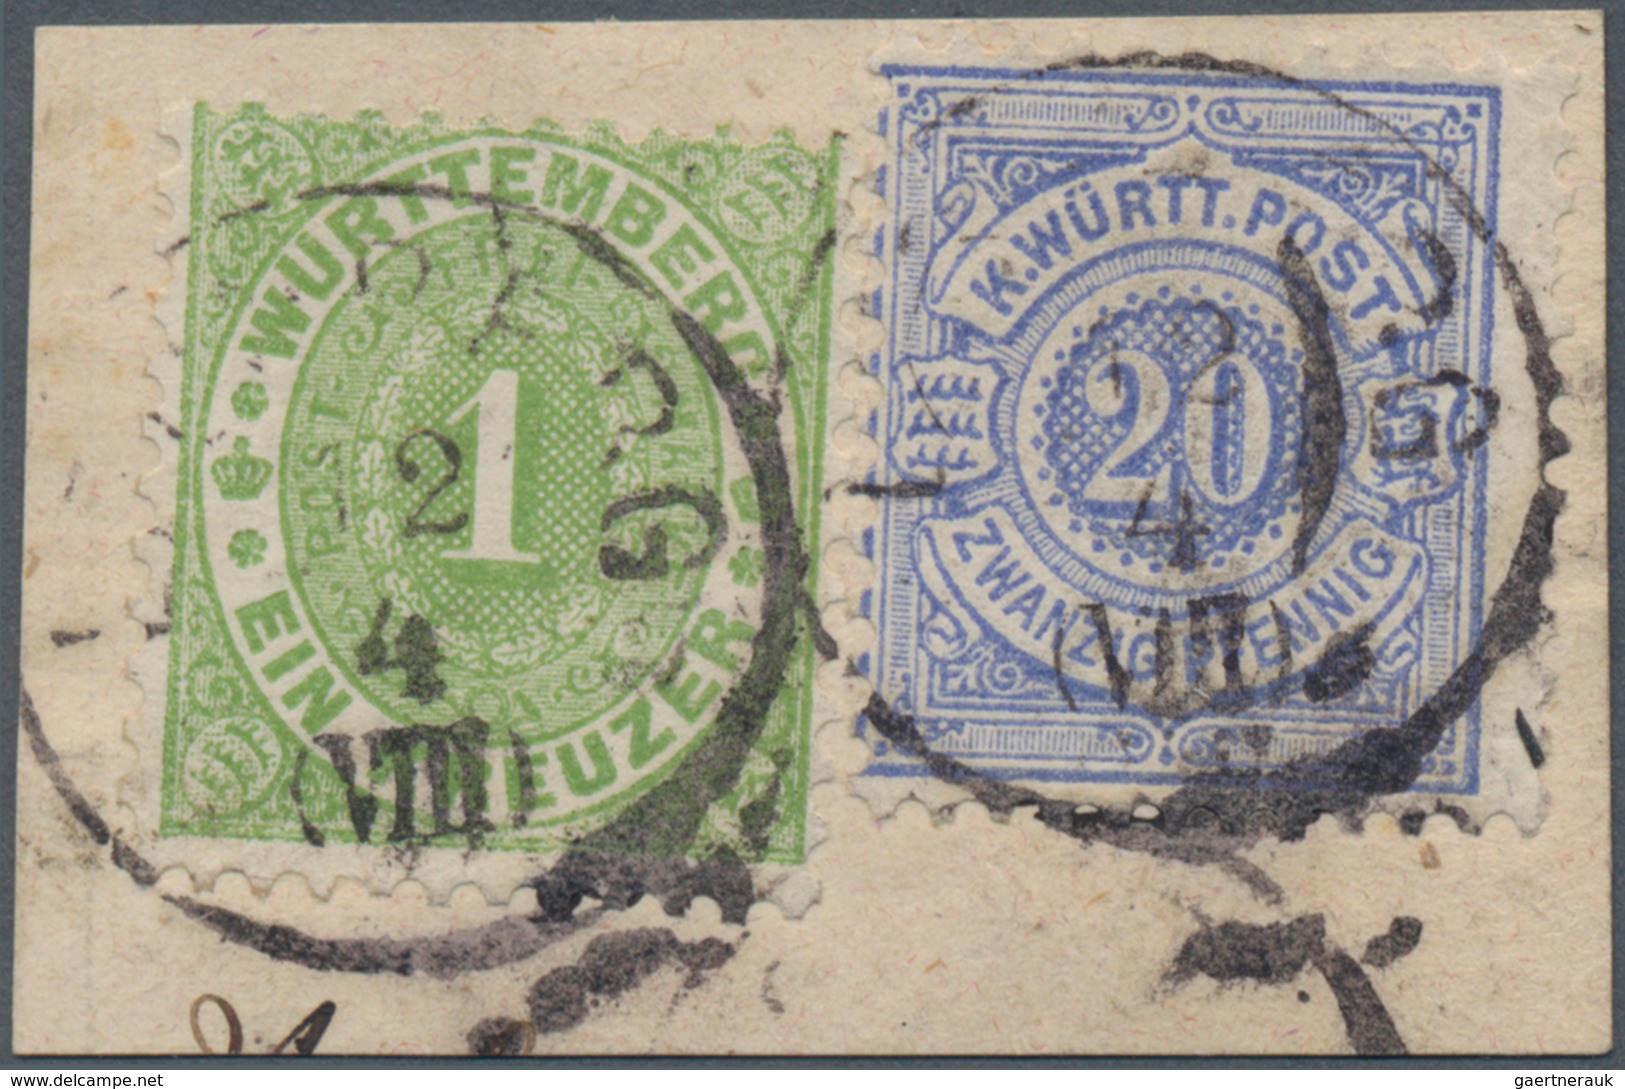 Württemberg - Marken und Briefe: 1869/1893, Partie von sieben Belegen, dabei fünfmal Postablagestemp